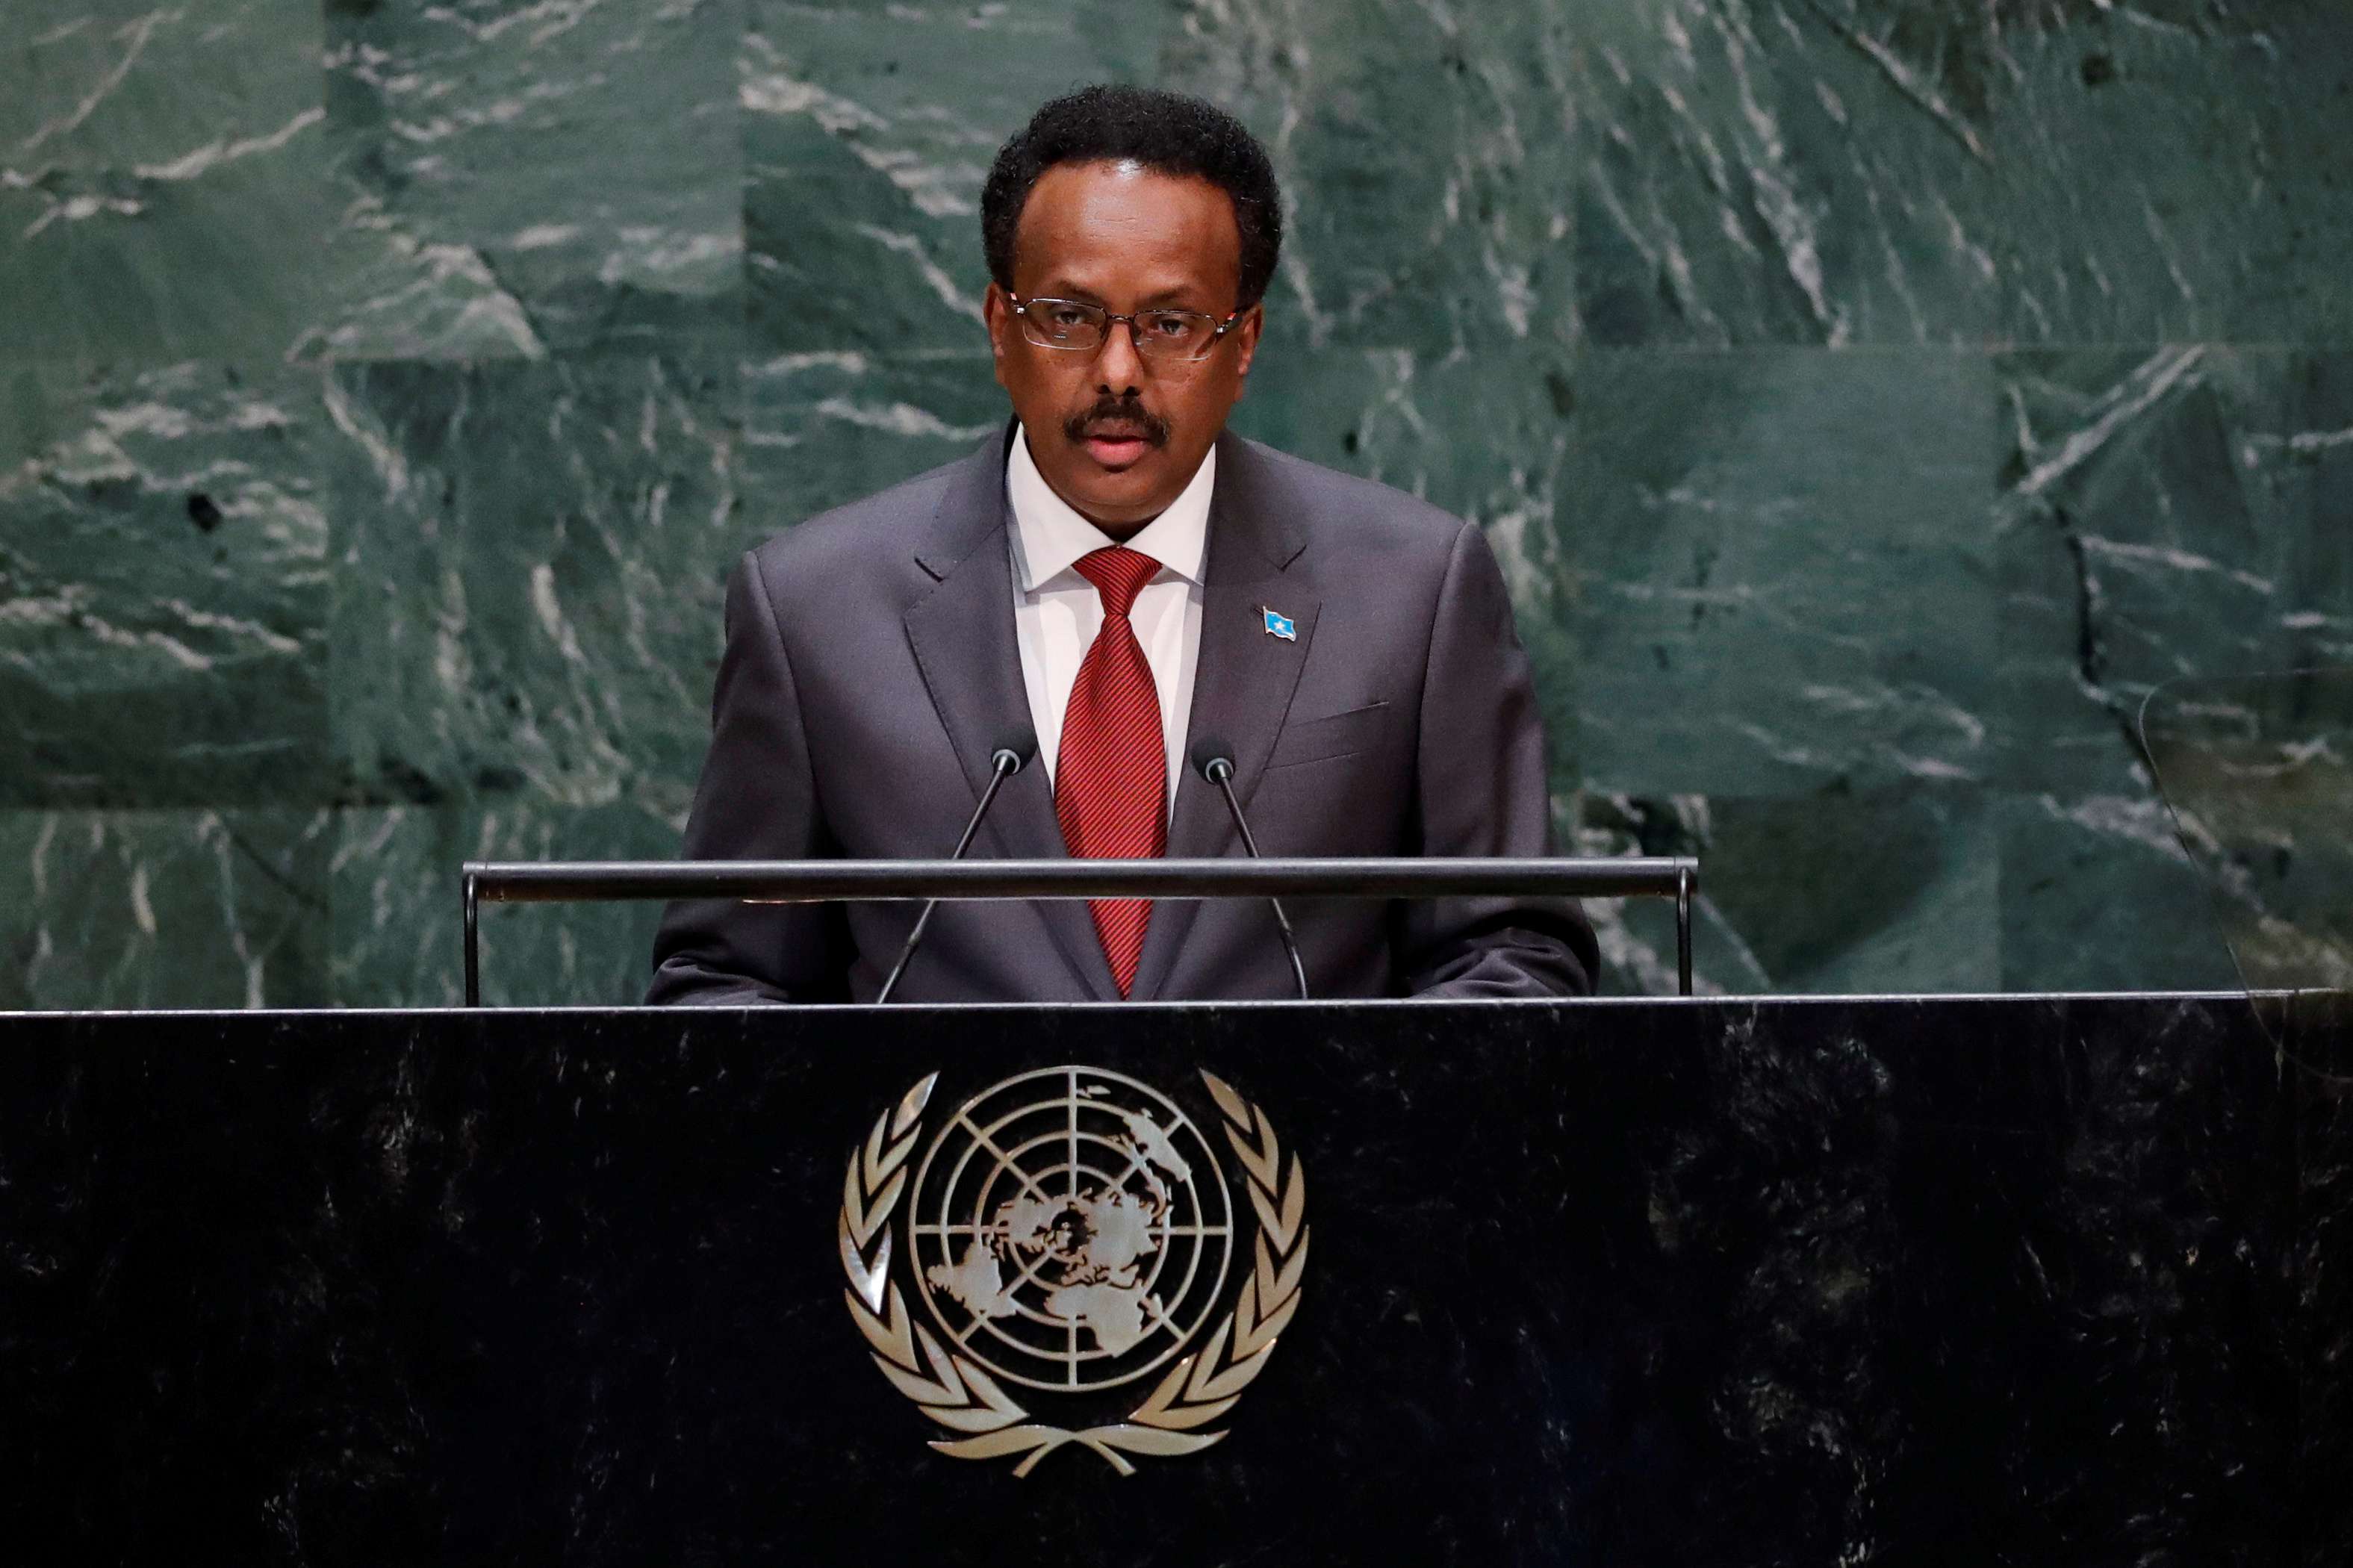  الرئيس الصومالي محمد عبد الله محمد 